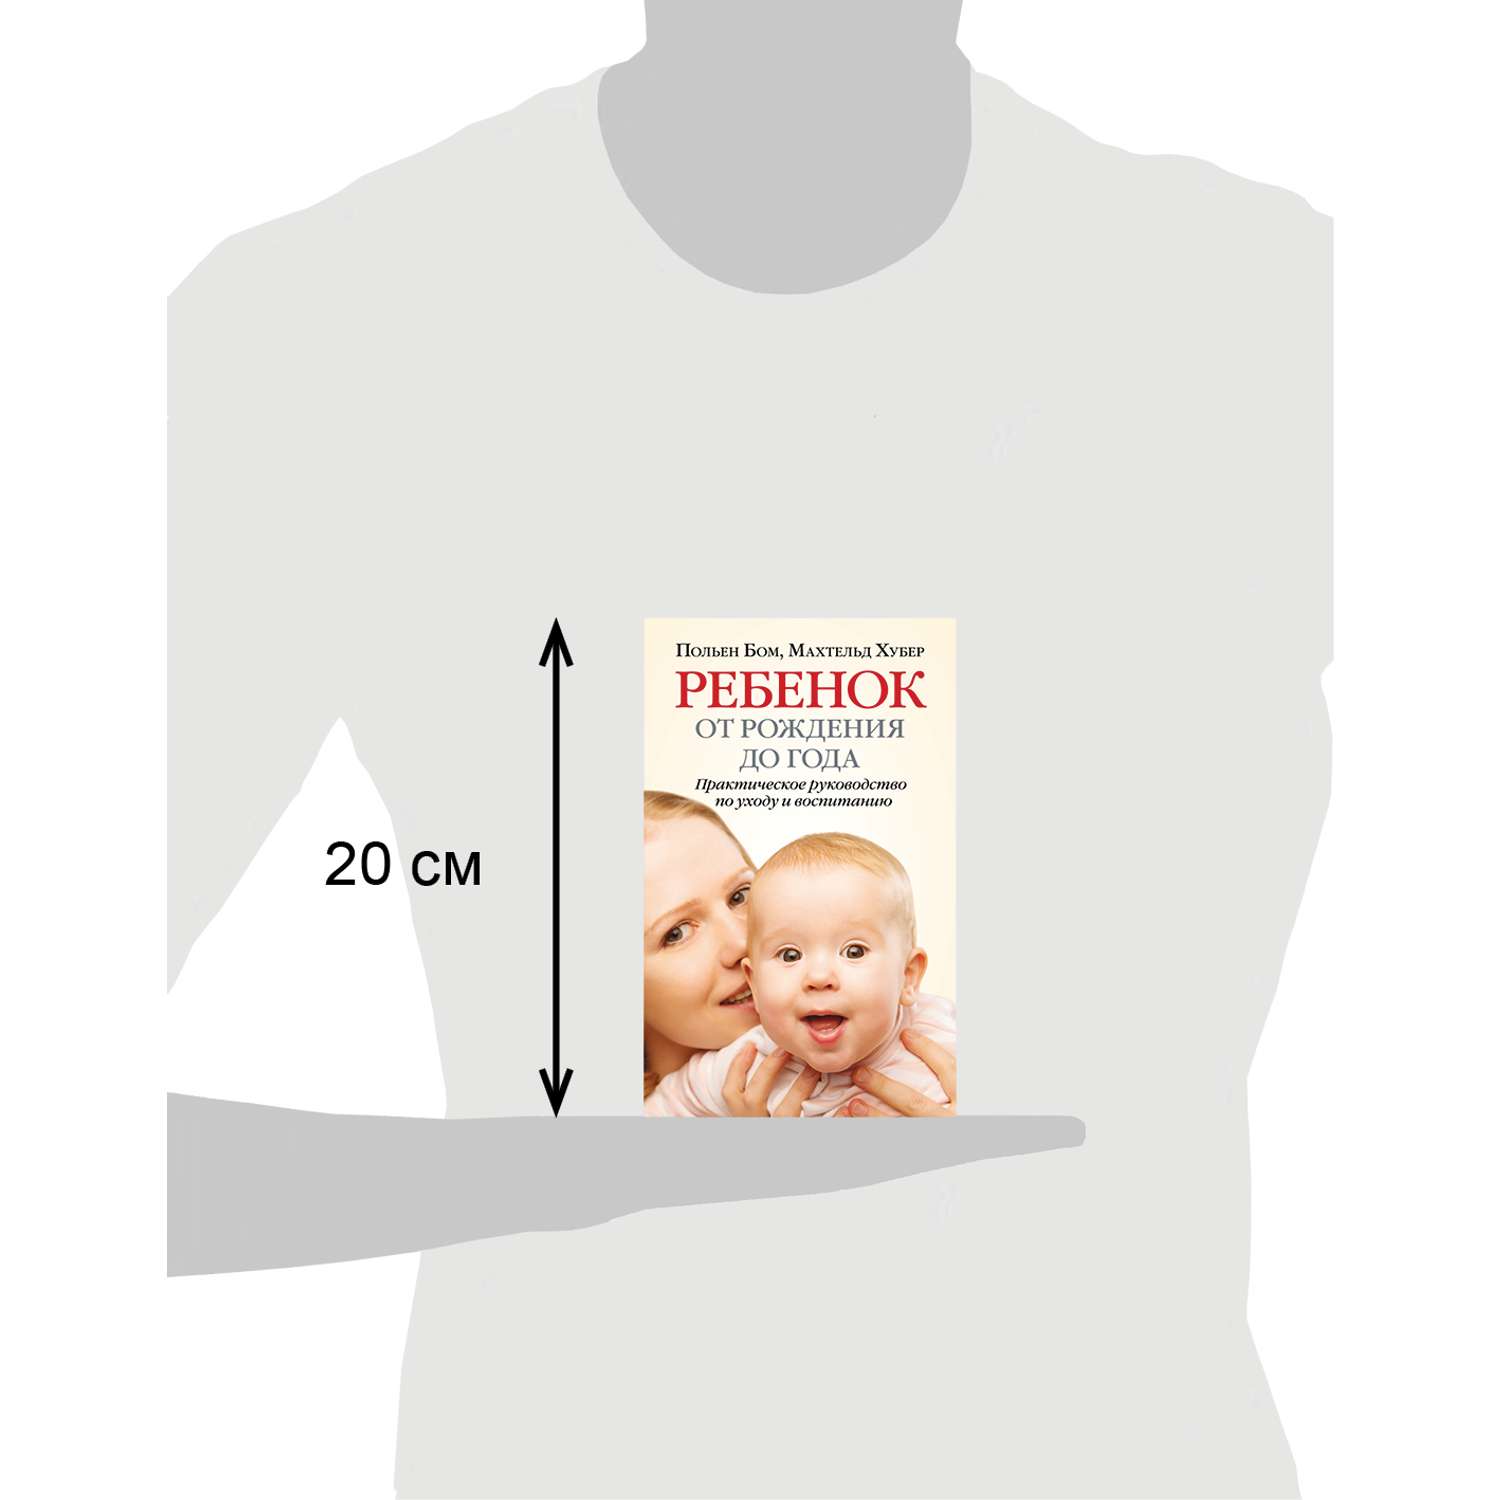 Махтельд Хуберт и Польен Бом/ Добрая книга / Ребёнок от рождения до года. Практическое руководство - фото 11